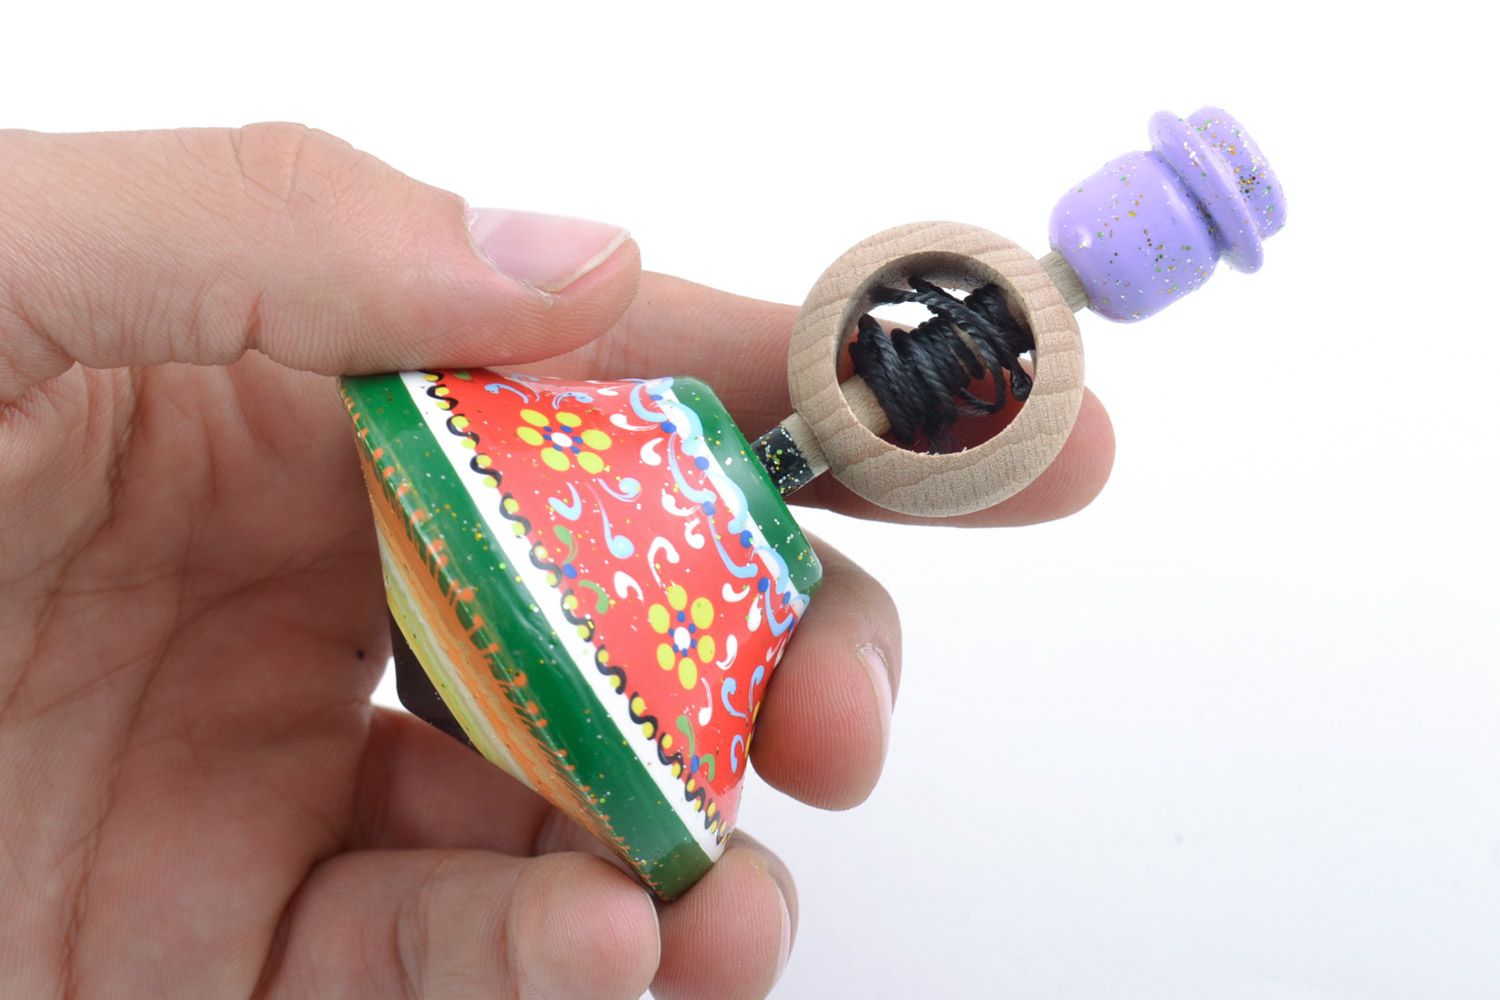 Деревянная эко игрушка юла развивающая для ребенка расписная ручной работы фото 5